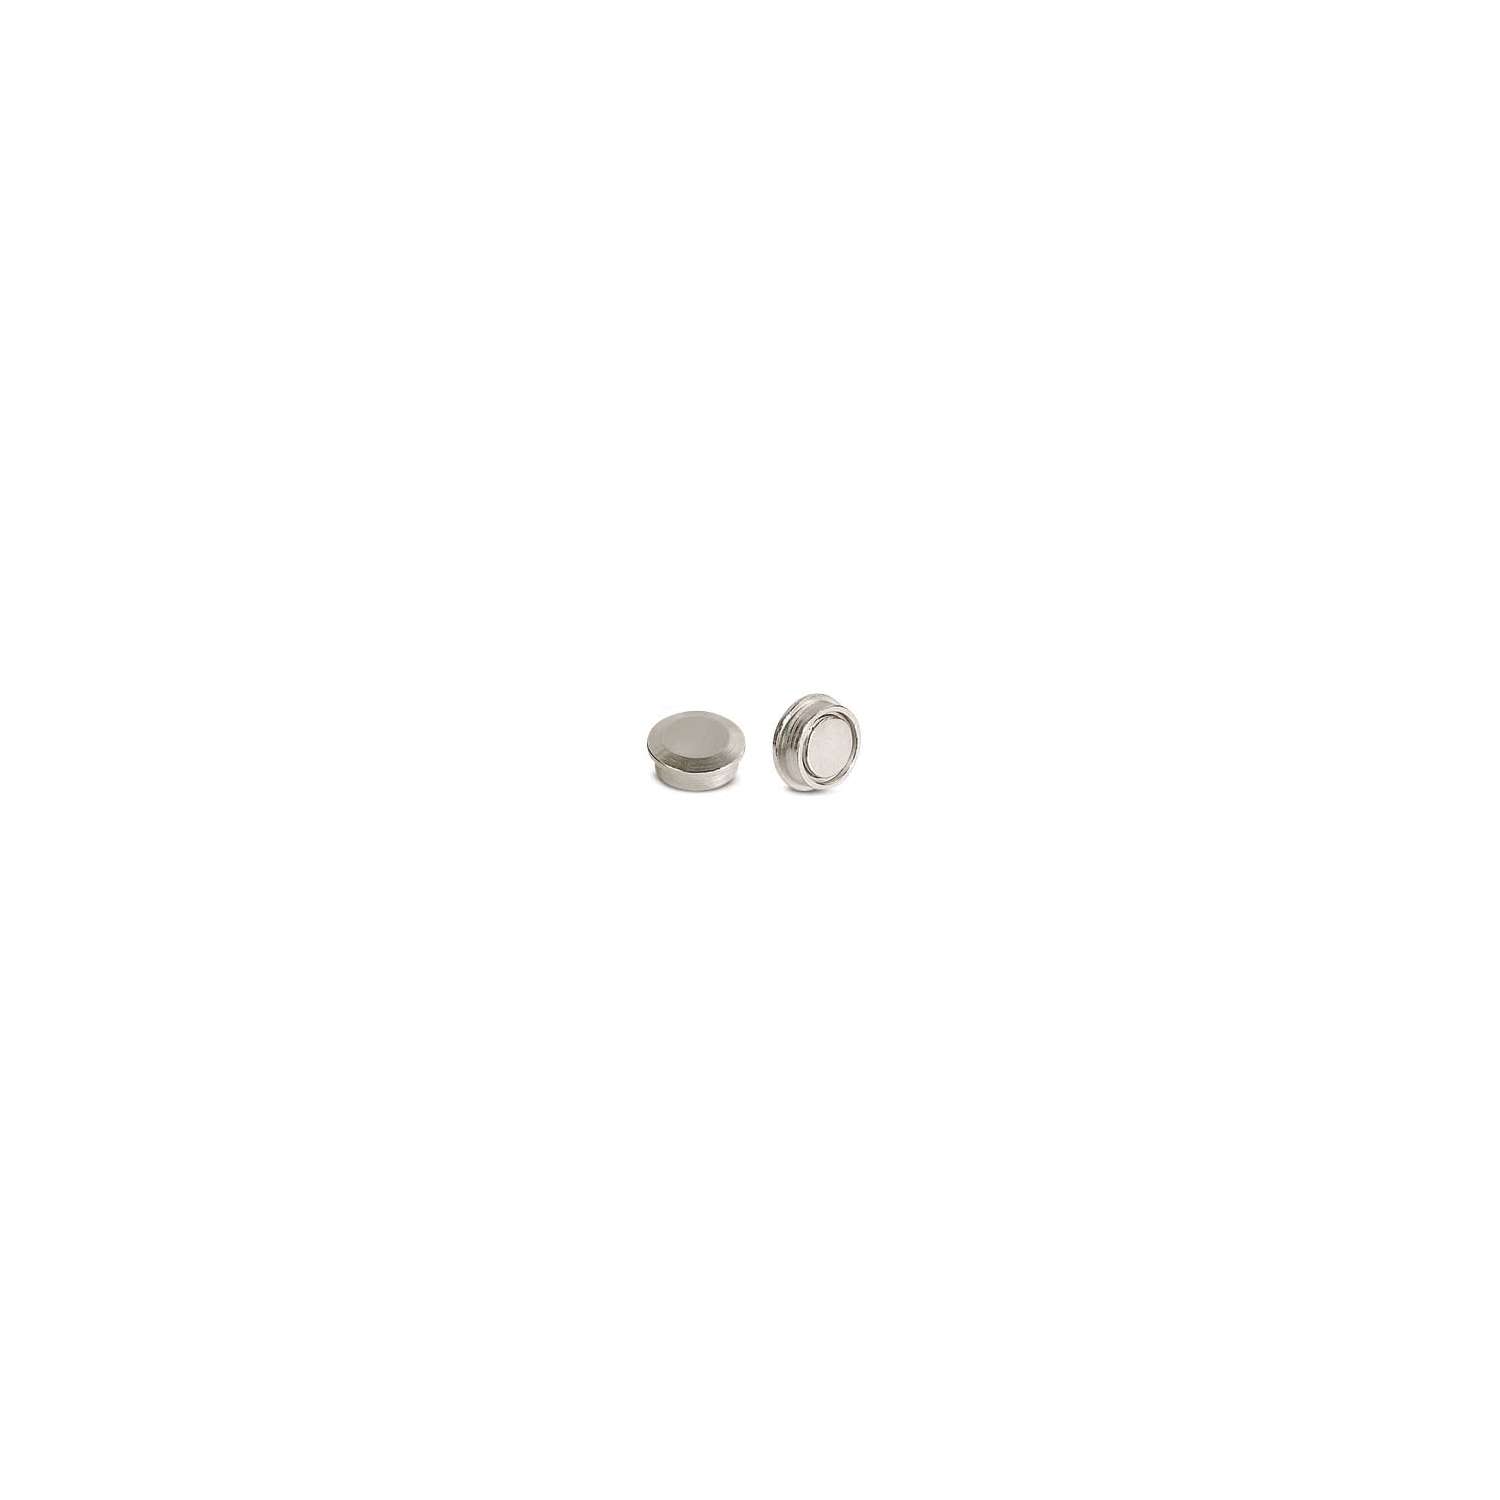 Aimants ronds Ecobra, 1,1 kg / 10 mm - Lot de 10 aimants 84873